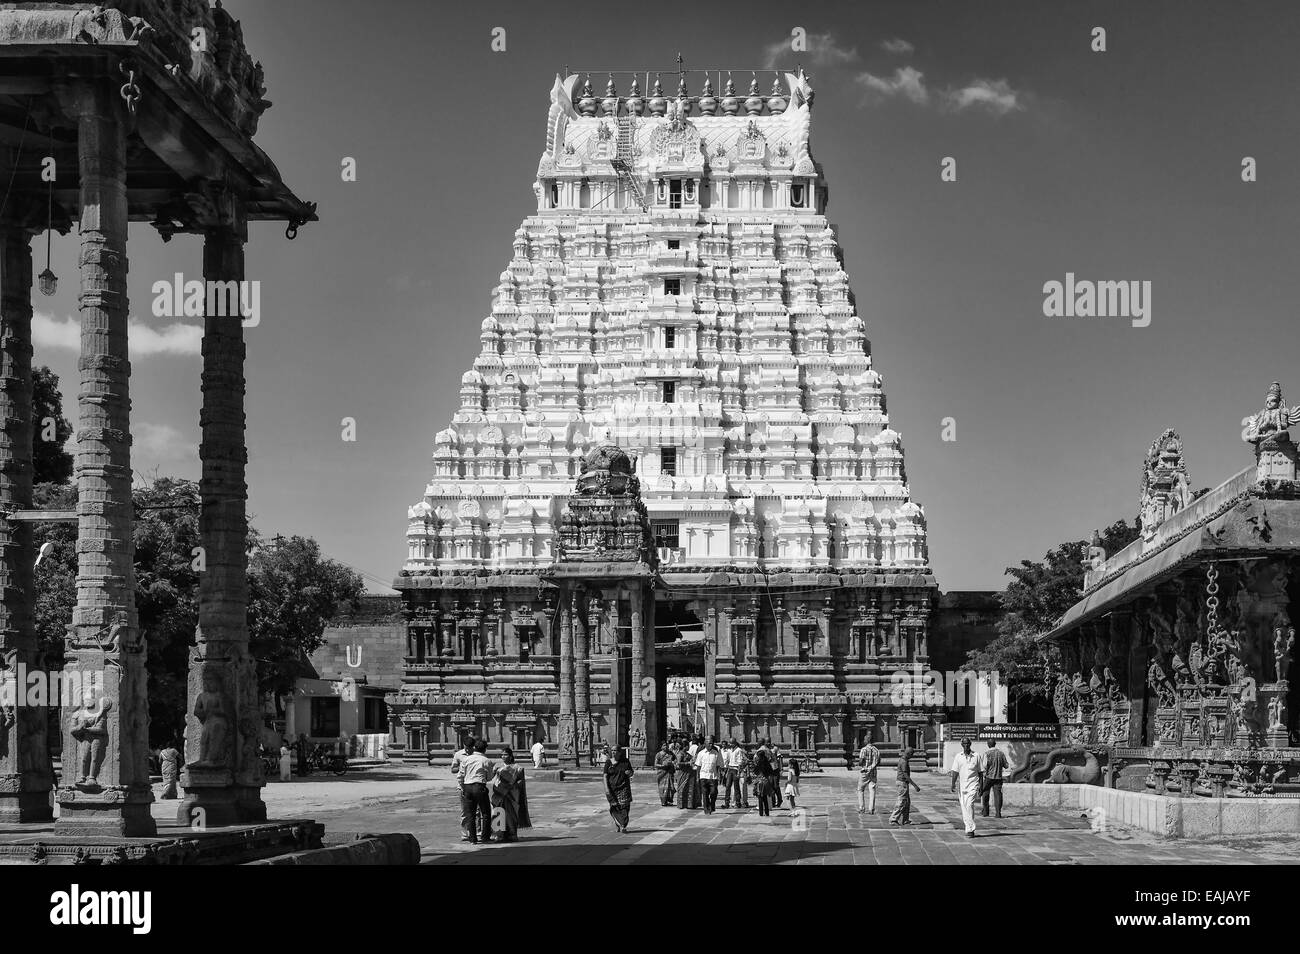 La foule de visiteurs à la belle Kanchi temple Kamakshi de Kancheepuram, Tamil Nadu, Inde. Banque D'Images